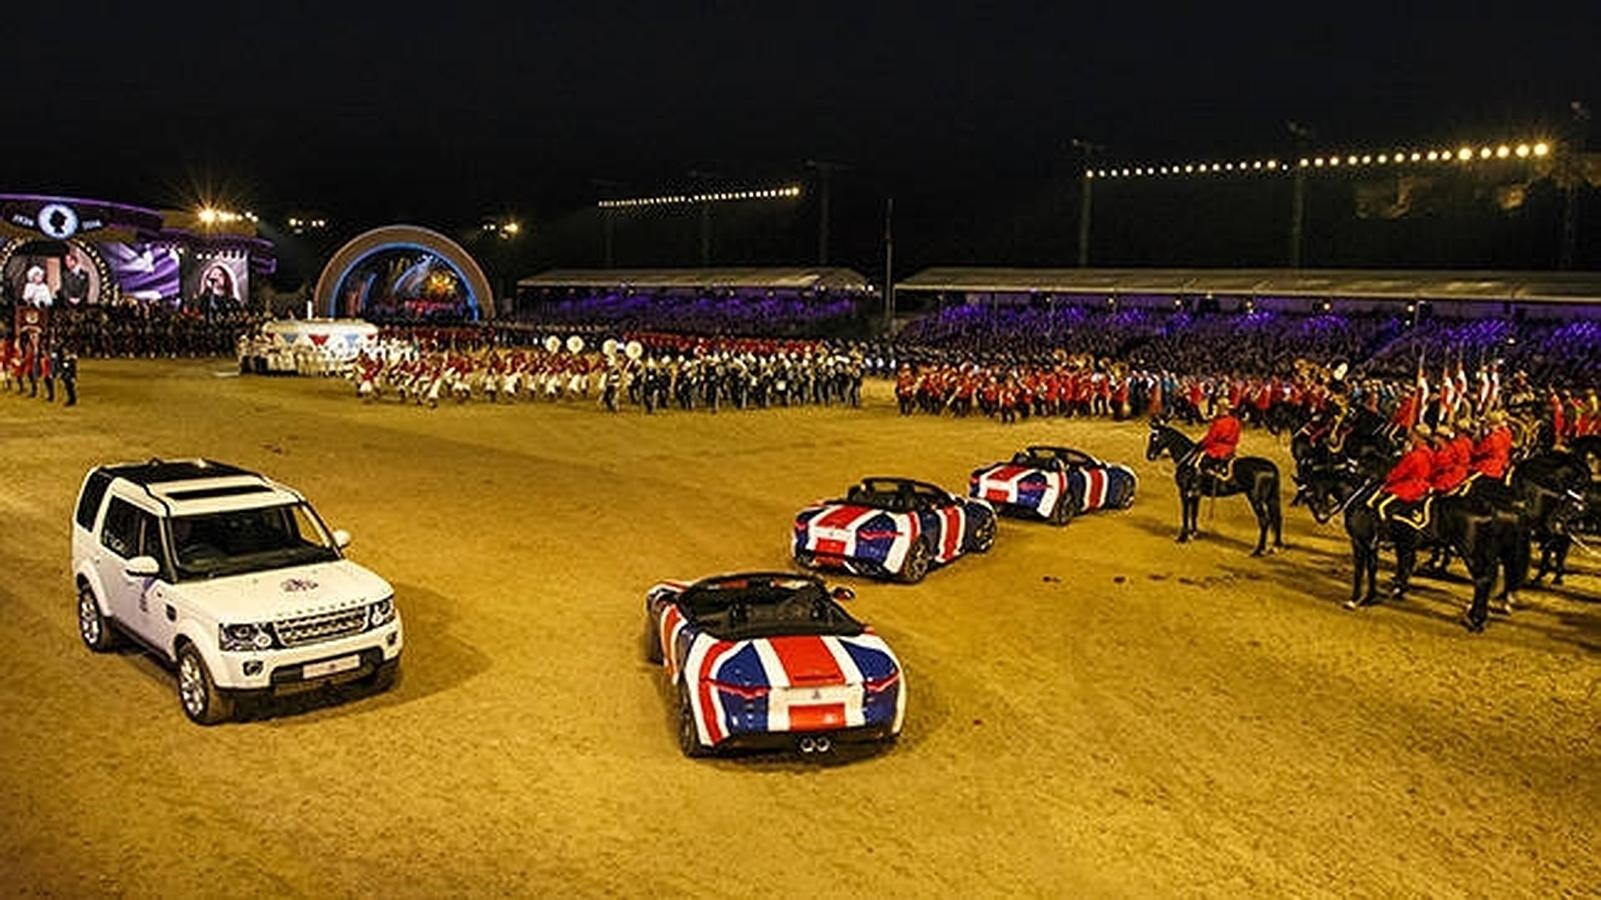 Los Jaguar F-TYPE y un Land Rover Discovery entre los protagonistas del cumpleaños